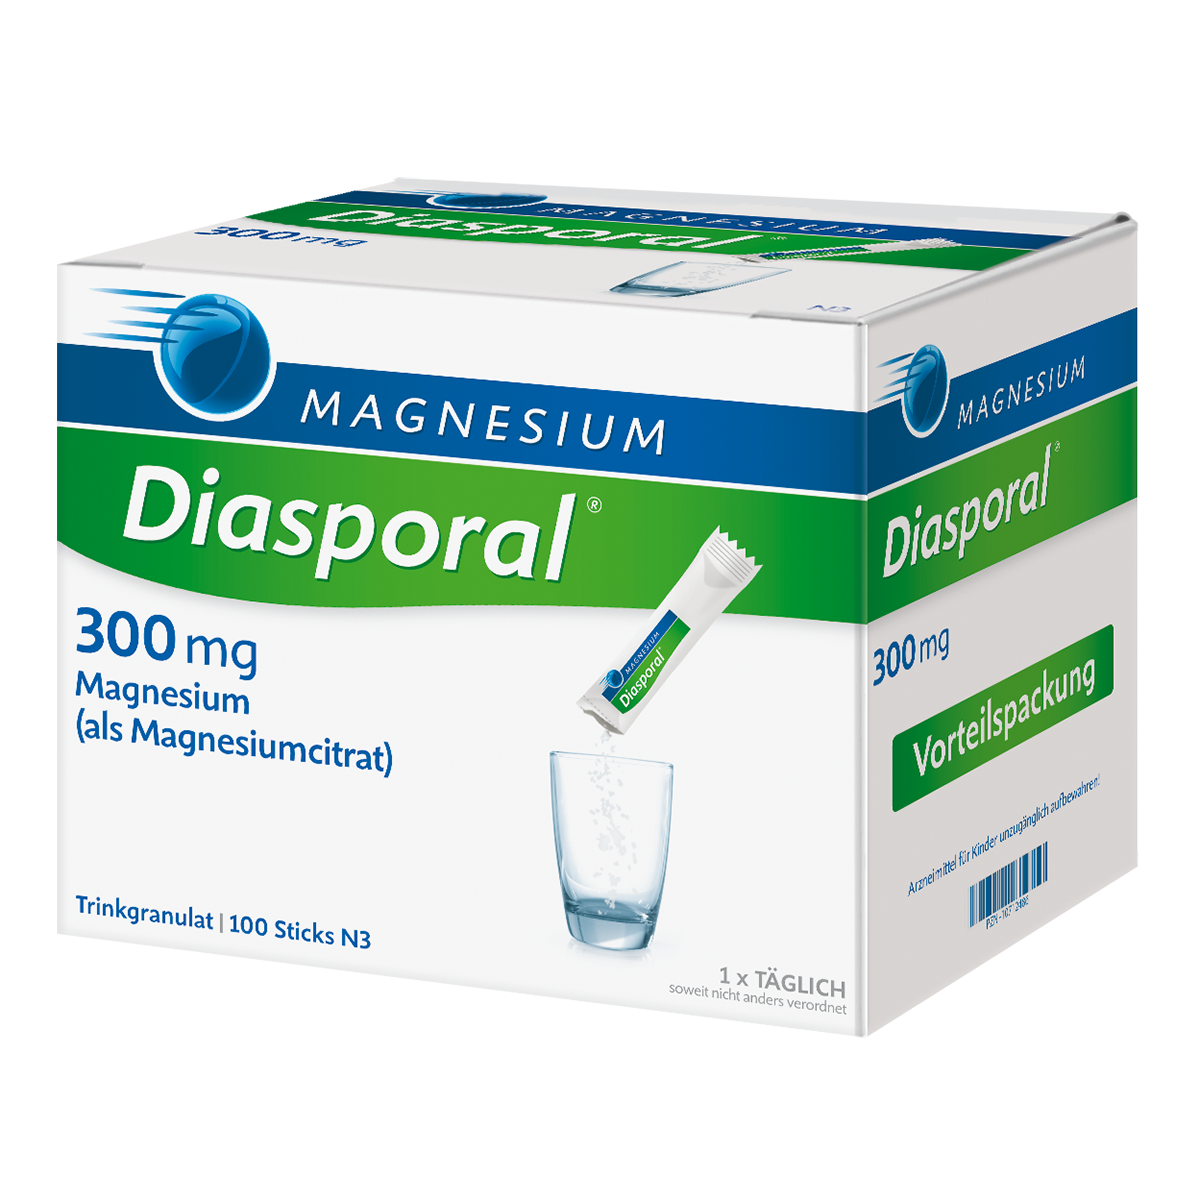 MAGNESIUM DIASPORAL 300 mg